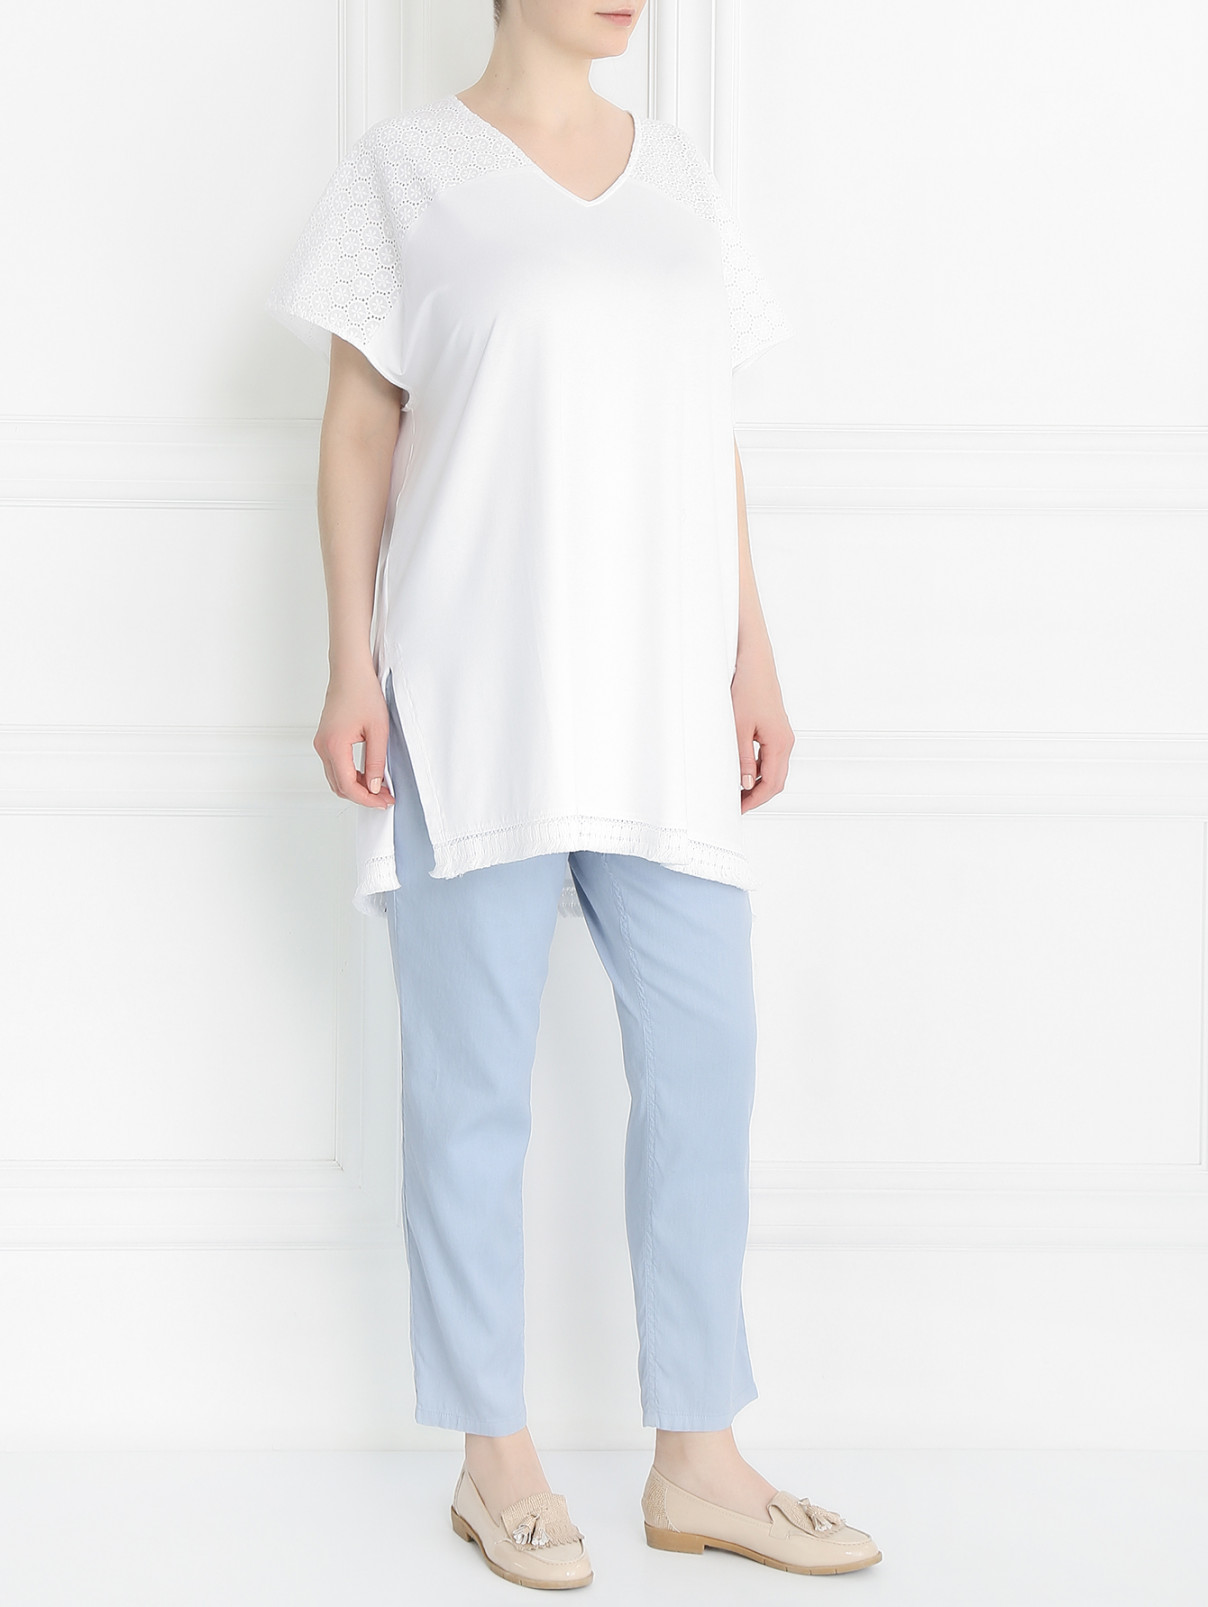 Удлиненная блуза с кружевными рукавами Marina Sport  –  Модель Общий вид  – Цвет:  Белый